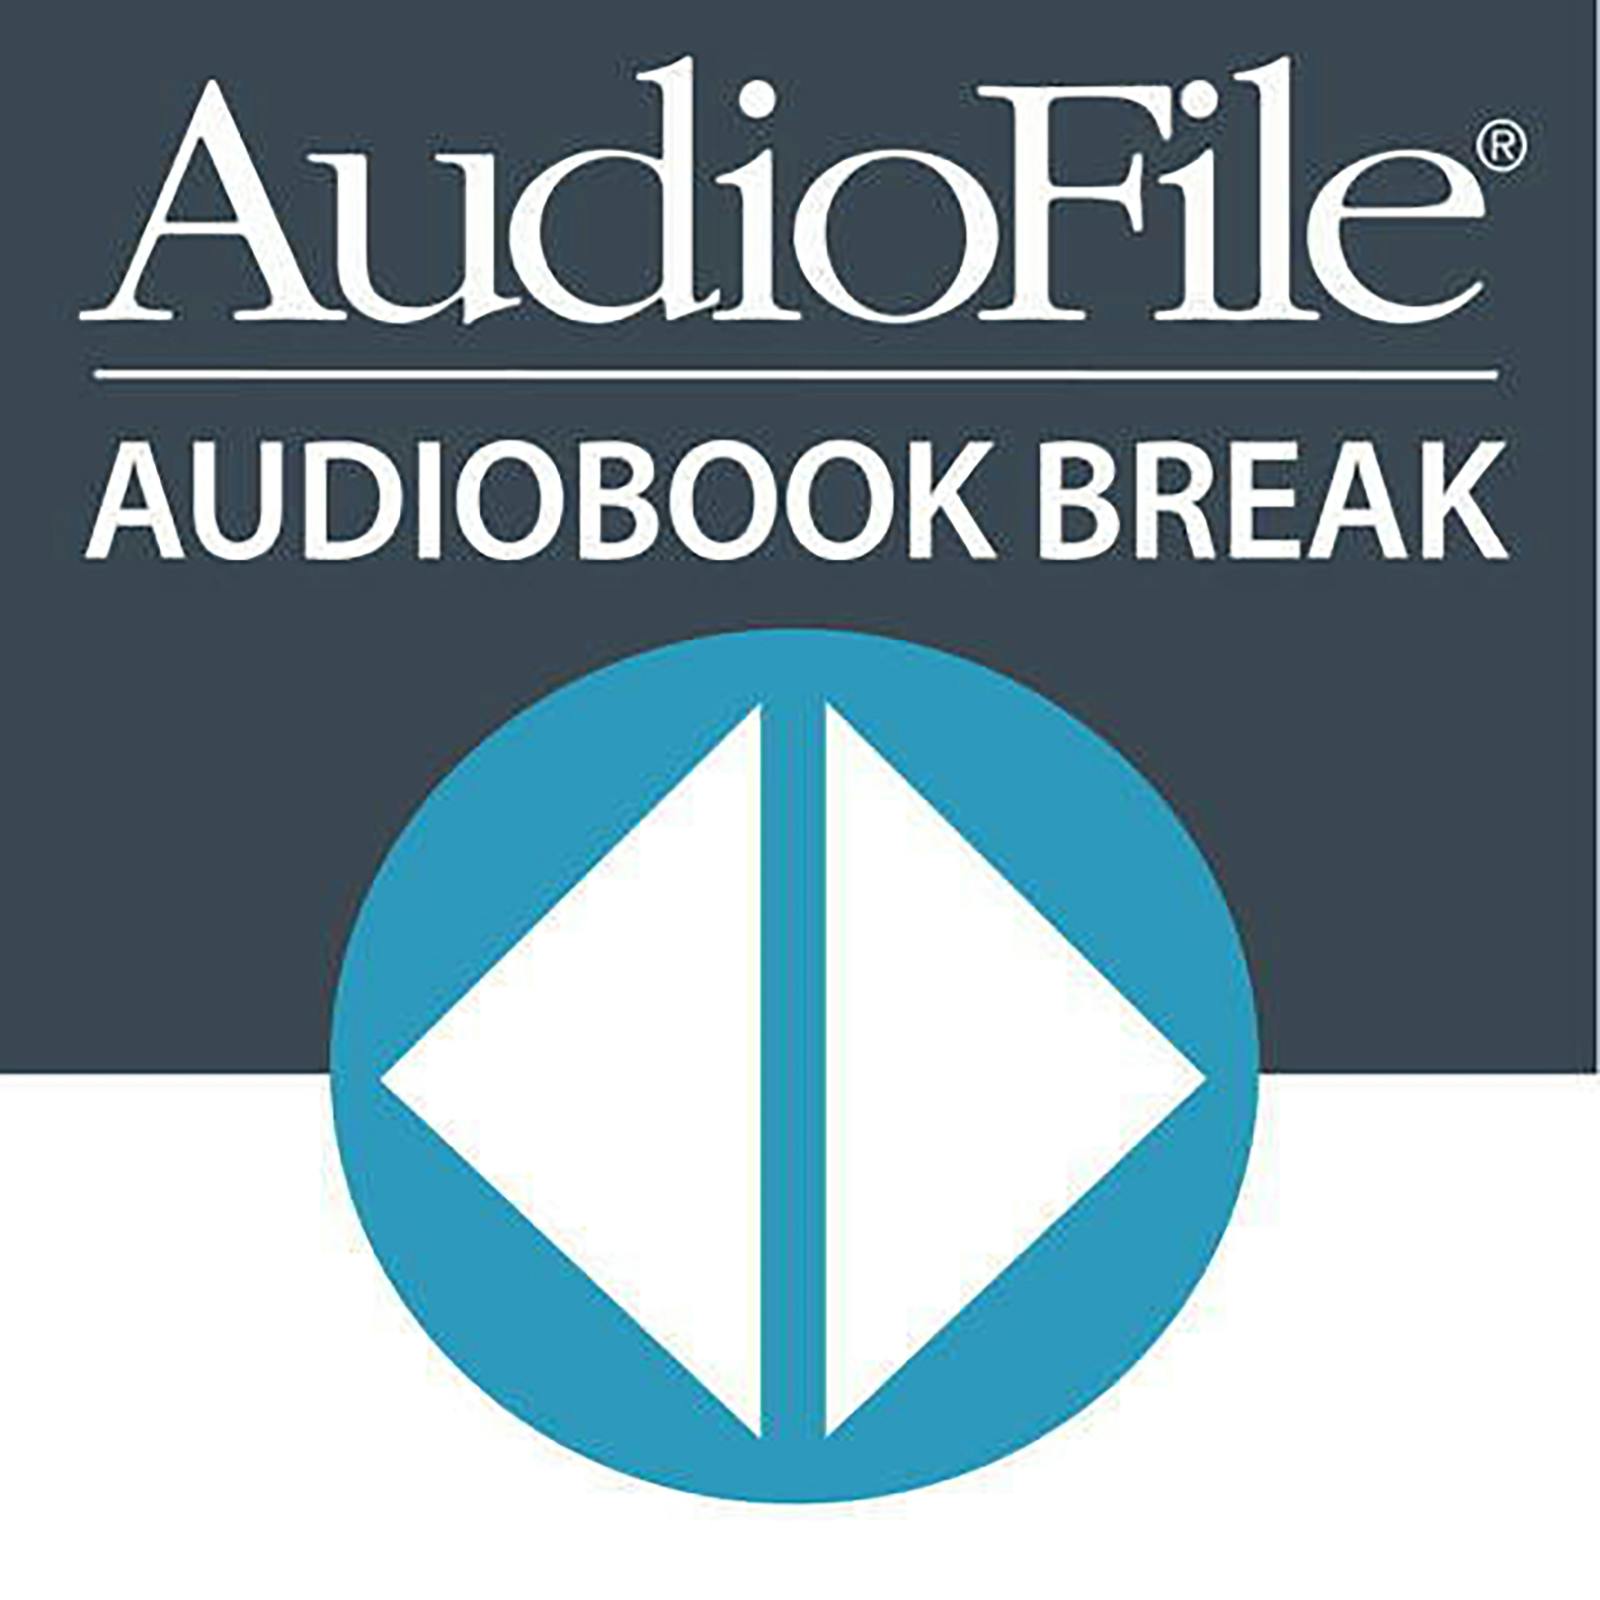 Audiobook Break with AudioFile Magazine